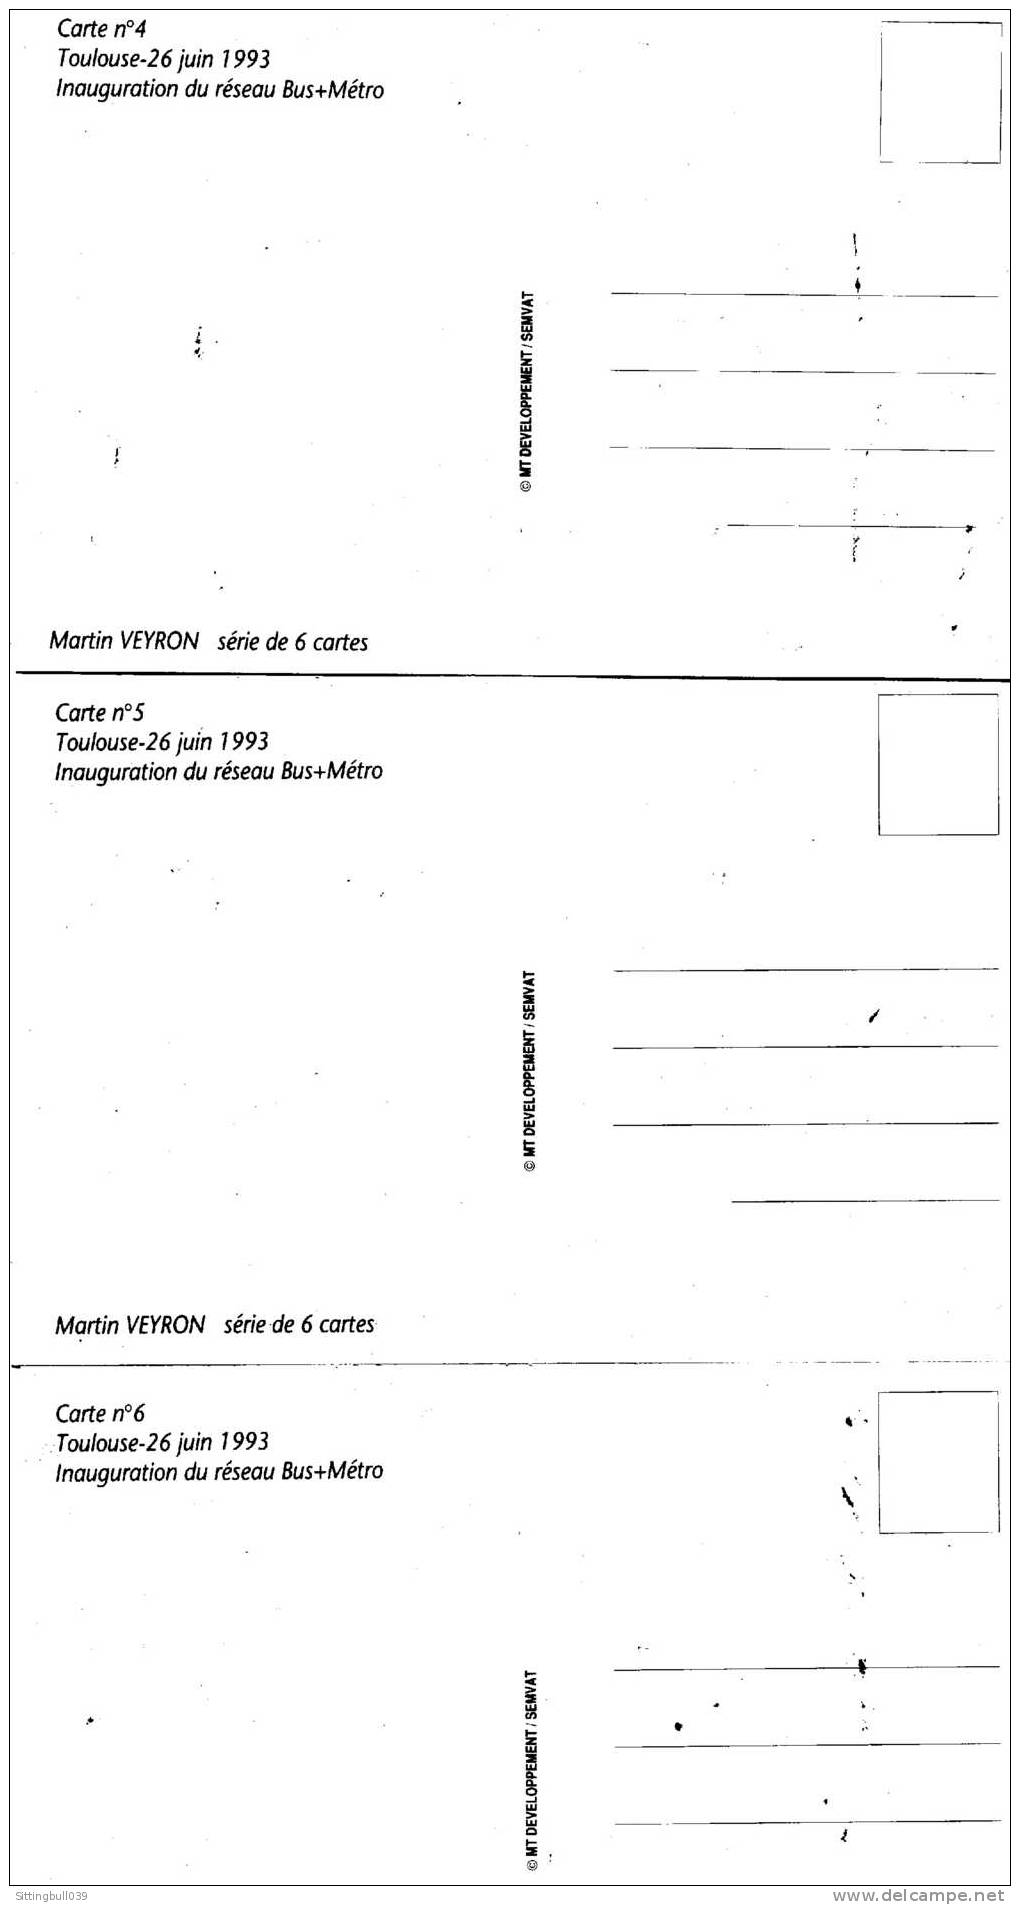 Martin VEYRON. SERIE COMPLÈTE DE 6 CP PUBLICITAIRES POUR L'INAUGURATION DU RESEAU BUS + METRO A TOULOUSE 1993 - Postcards